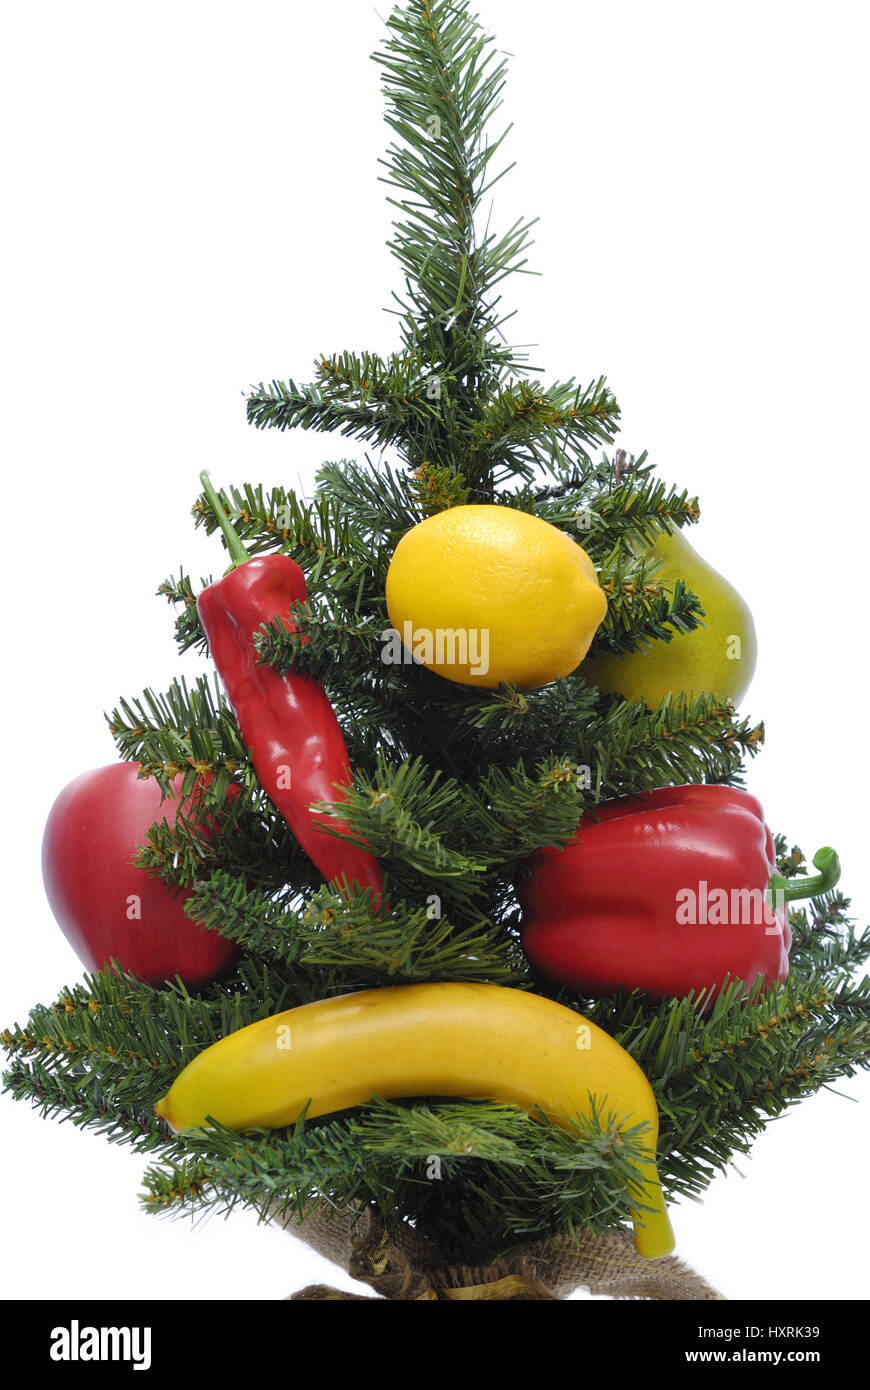 Sinon, l'arbre de Noël décoré du commerce alternatif Weihnachtsbaum Banque D'Images